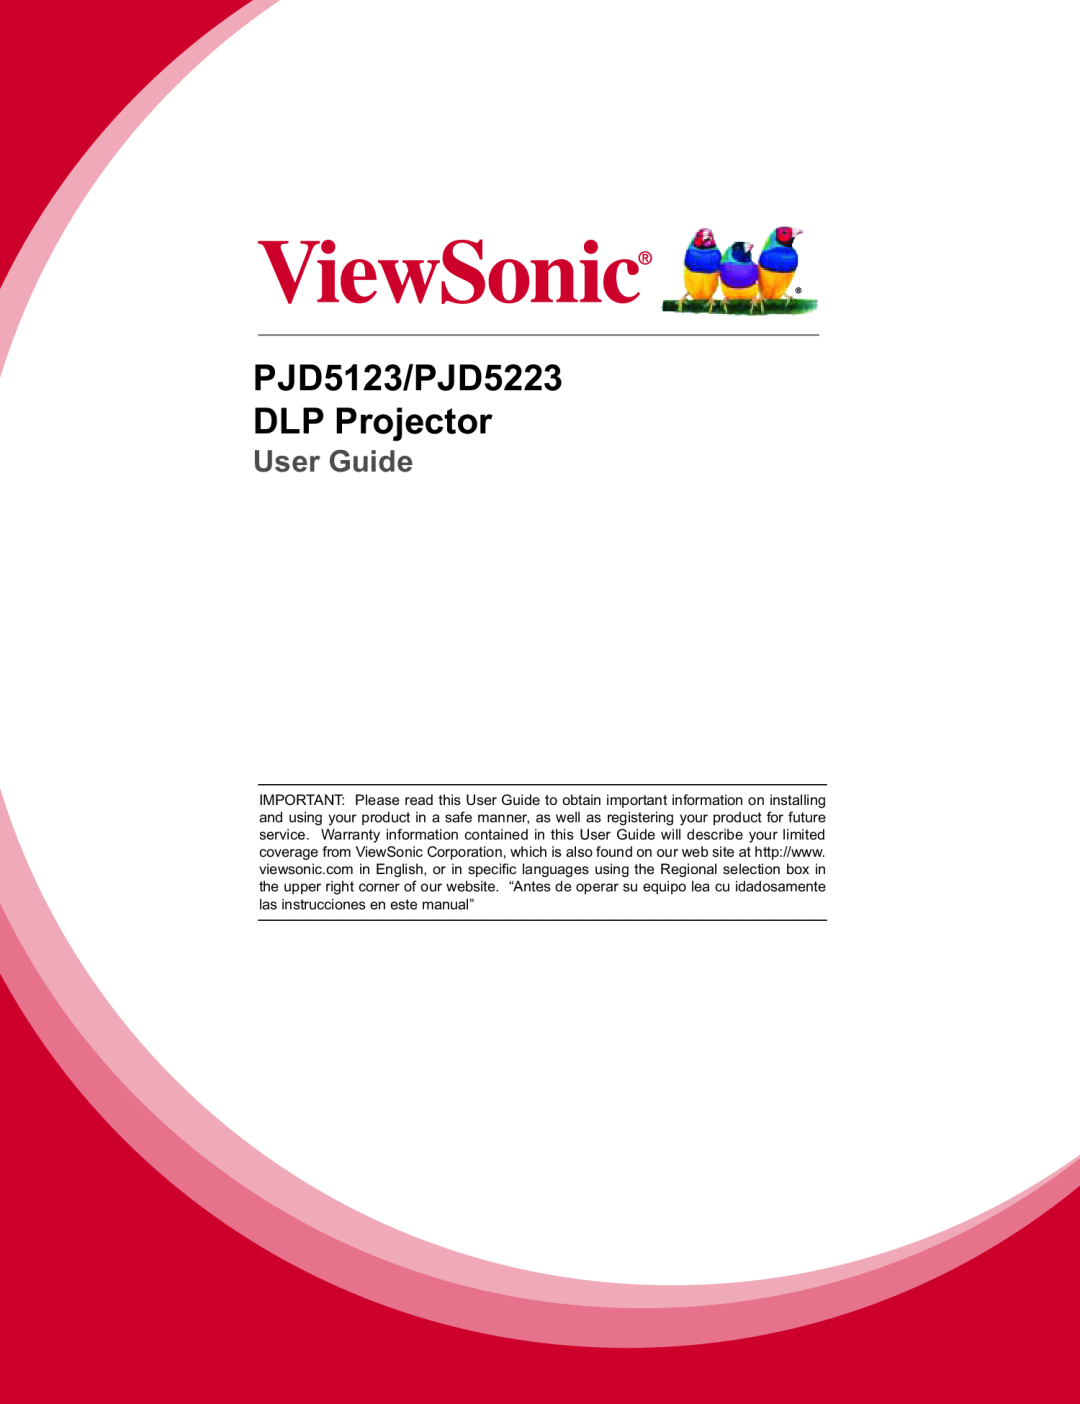 ViewSonic warranty PJD5123/PJD5223 DLP Projector, User Guide 